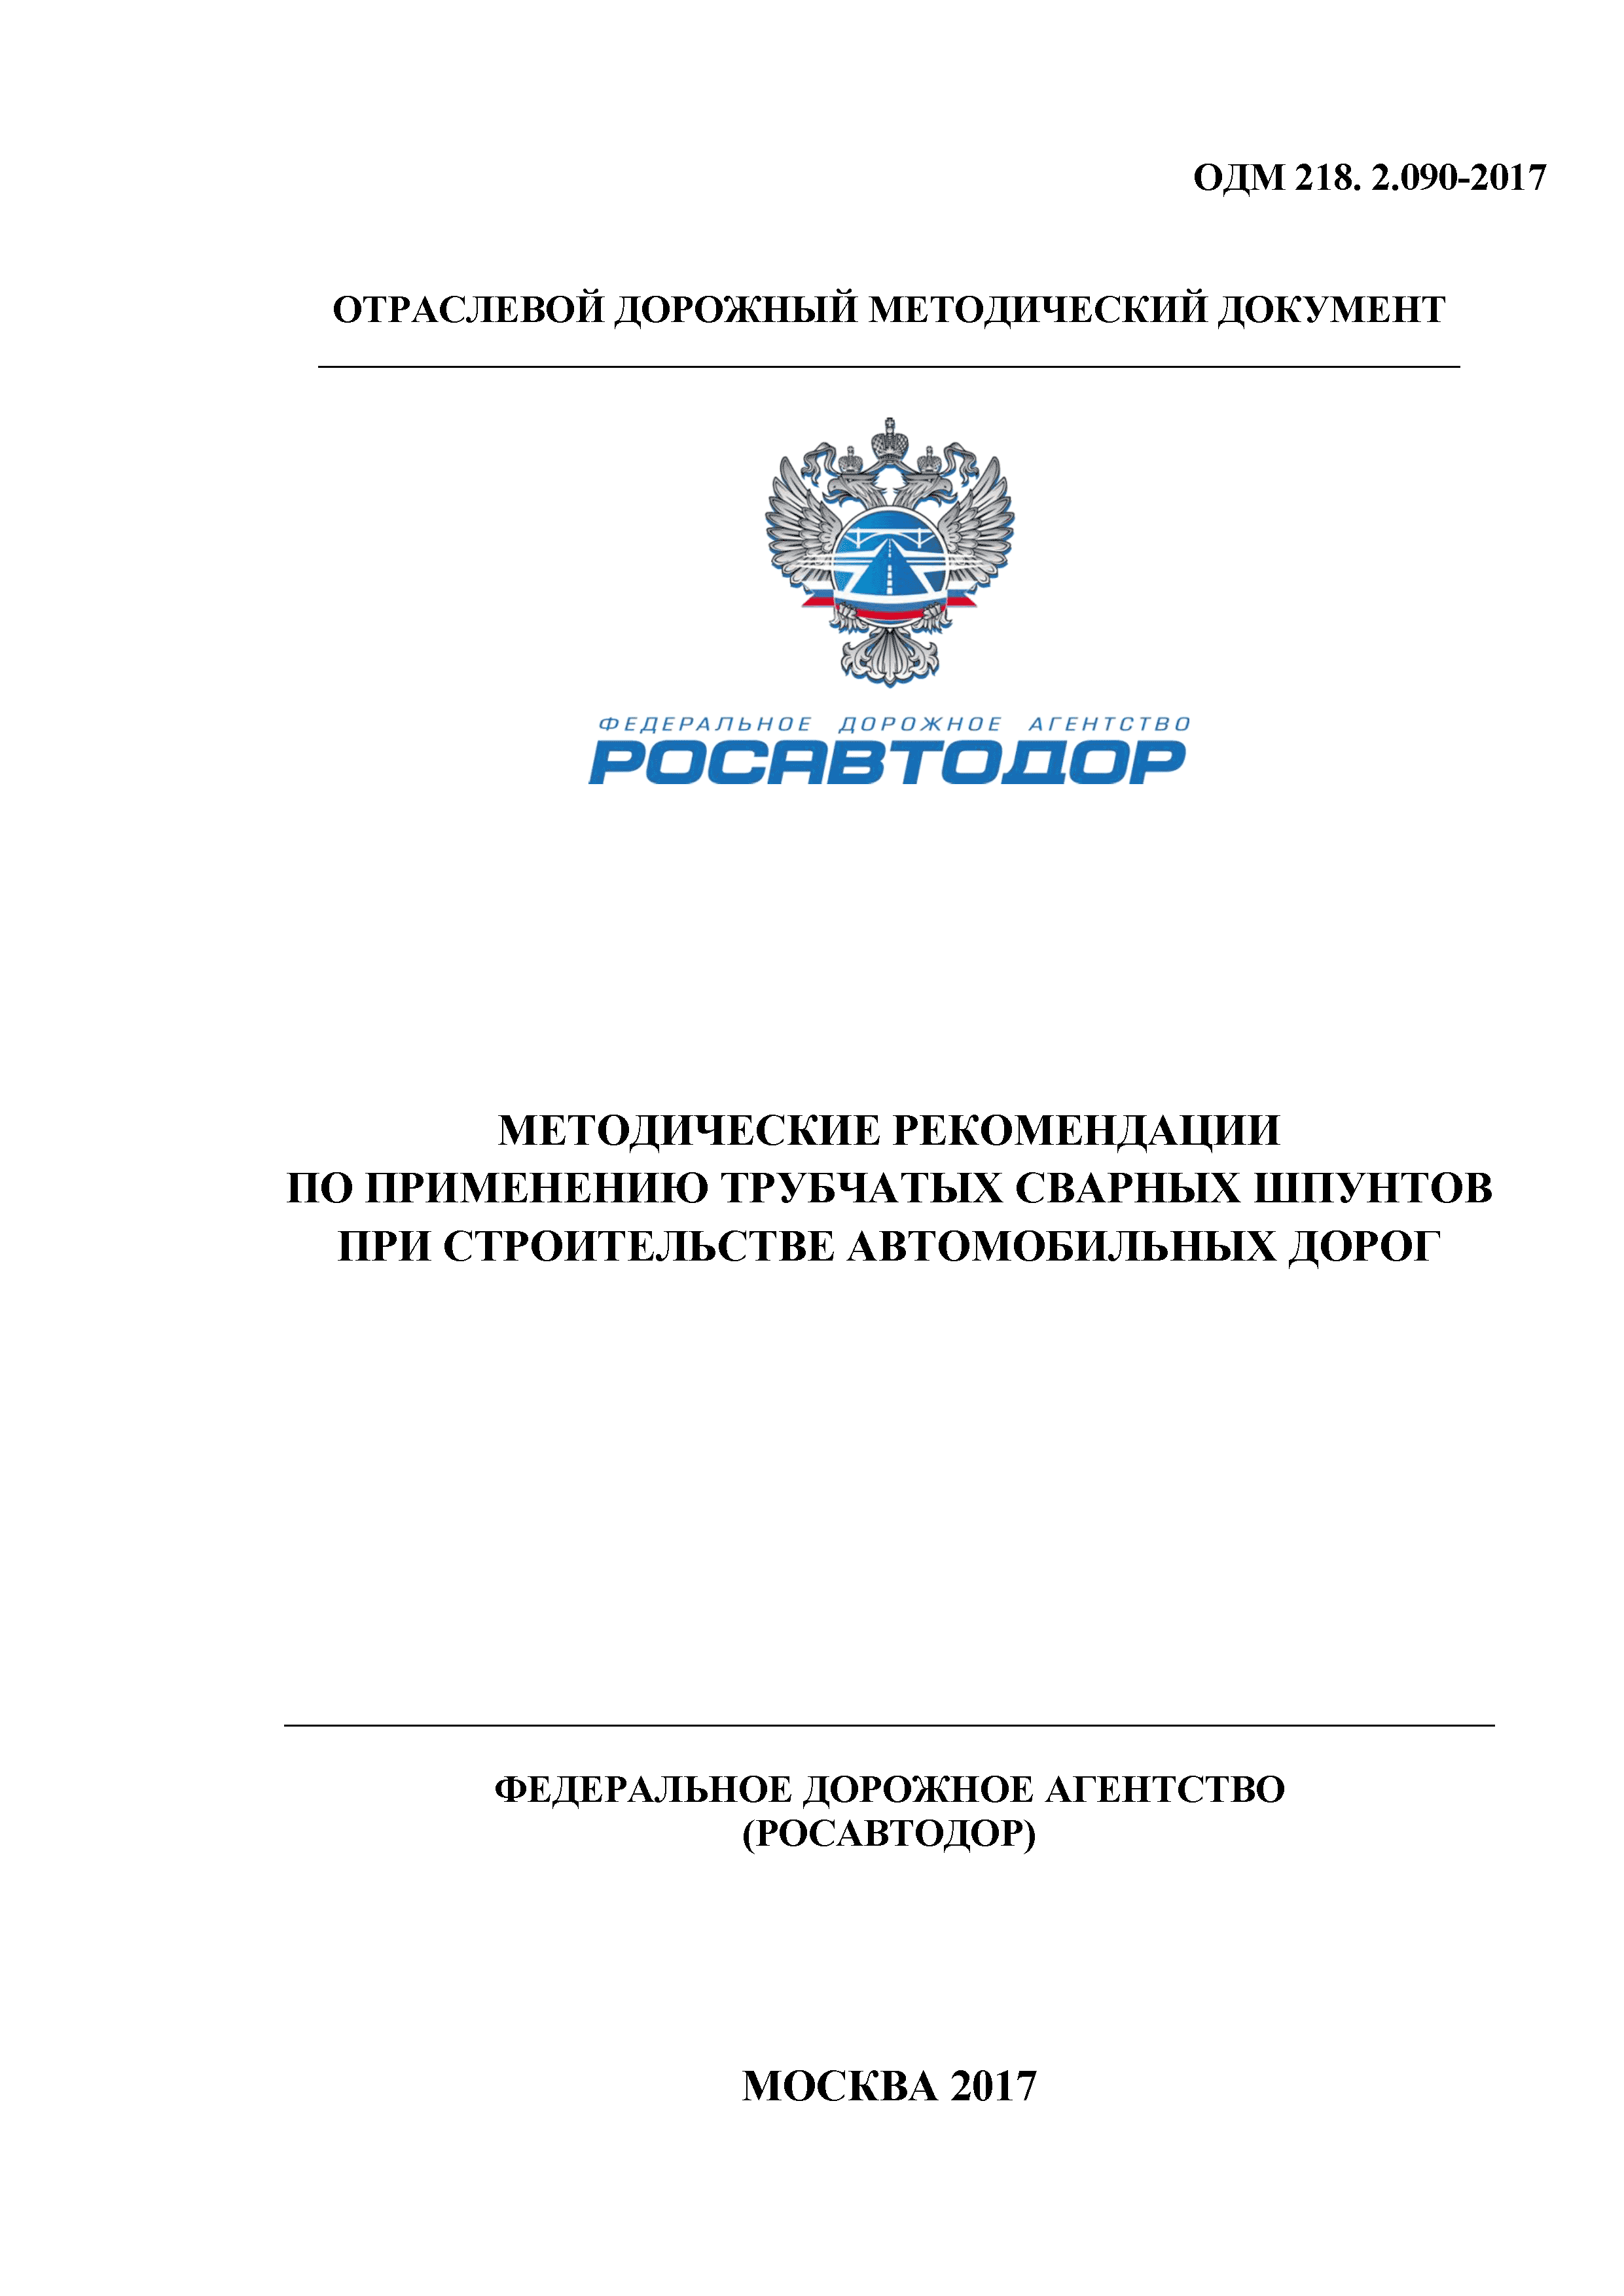 ОДМ 218.2.090-2017